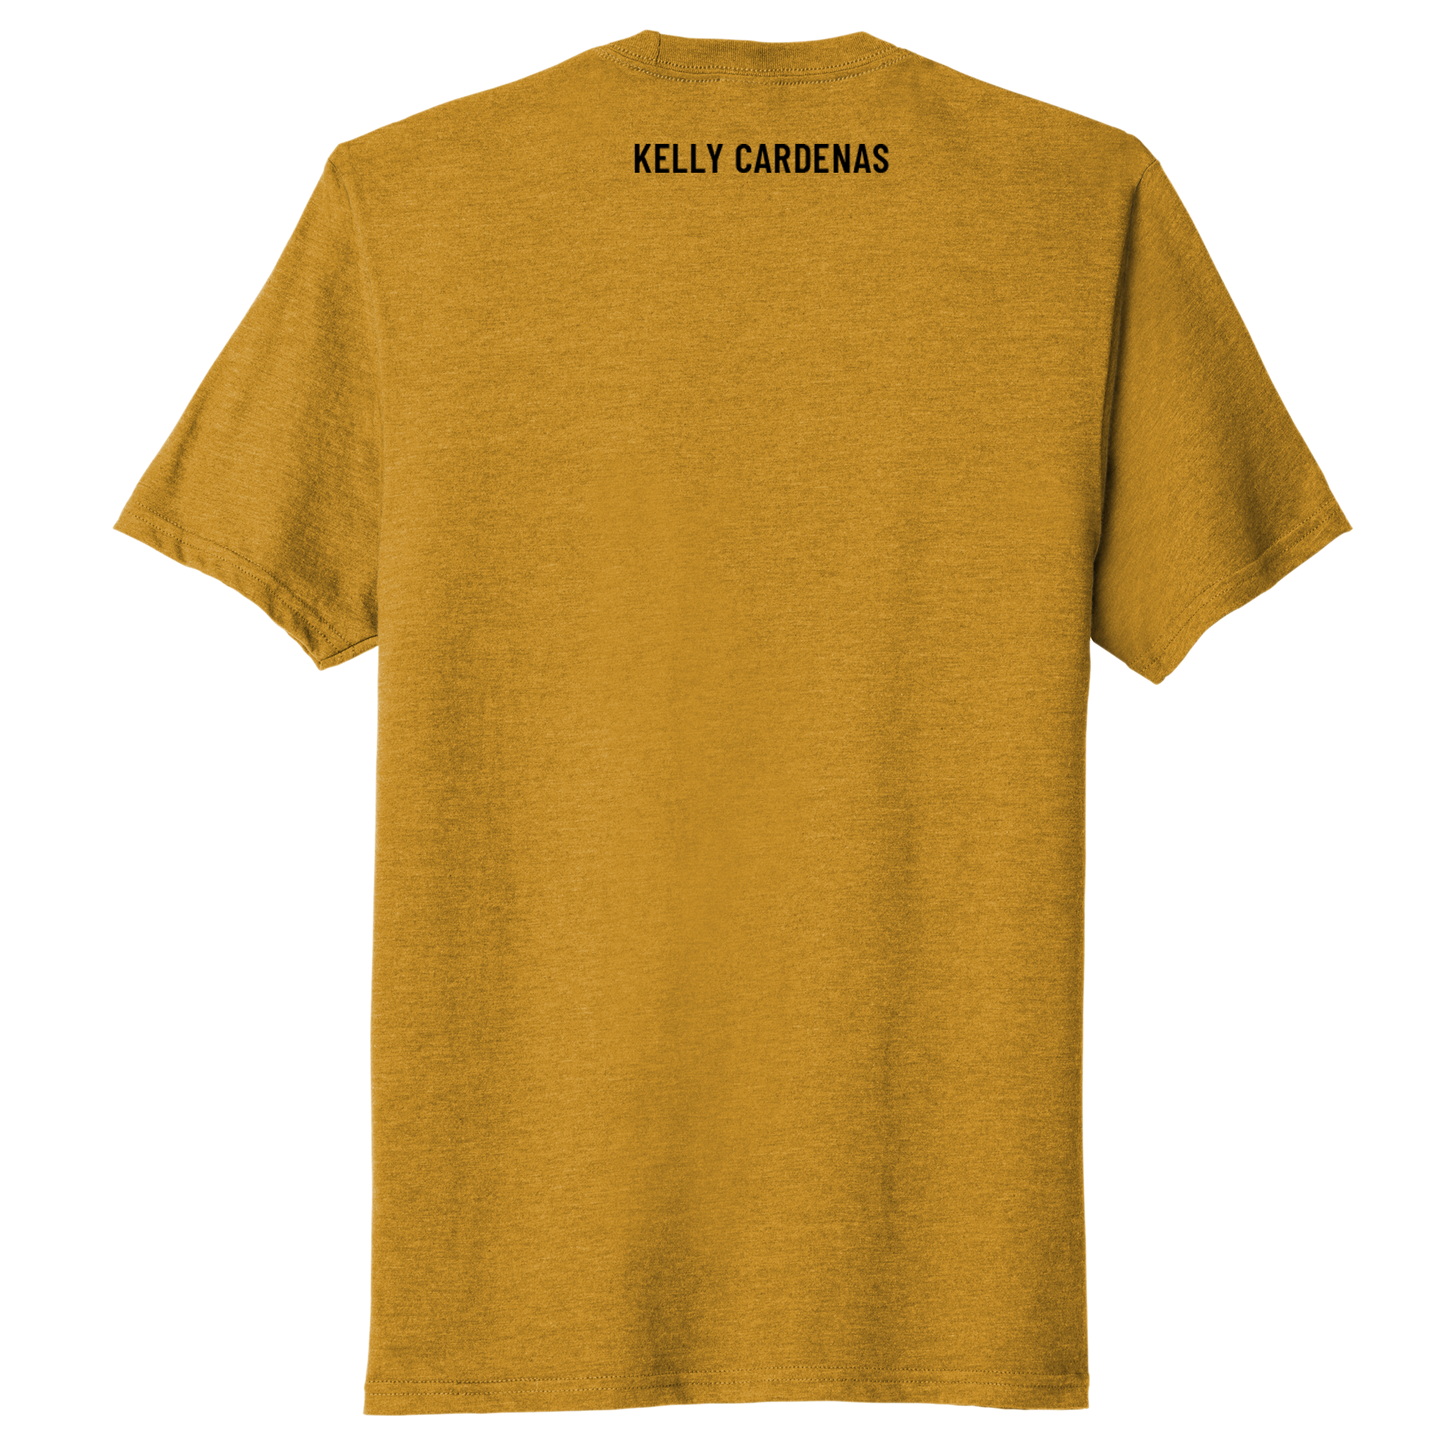 Kelly Cardenas Small Logo T-Shirt